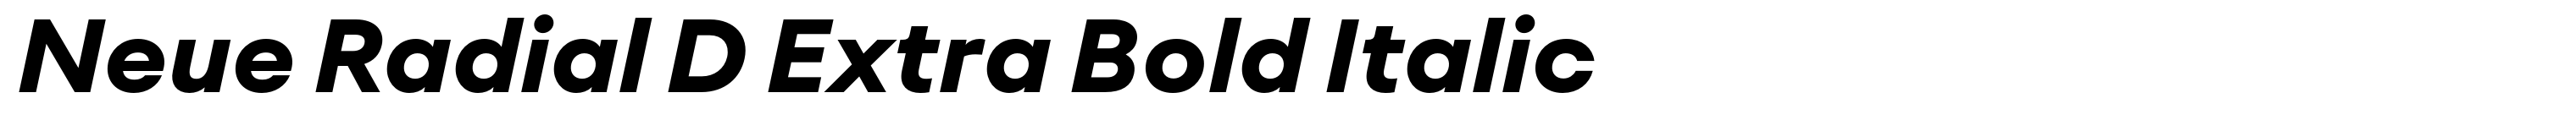 Neue Radial D Extra Bold Italic